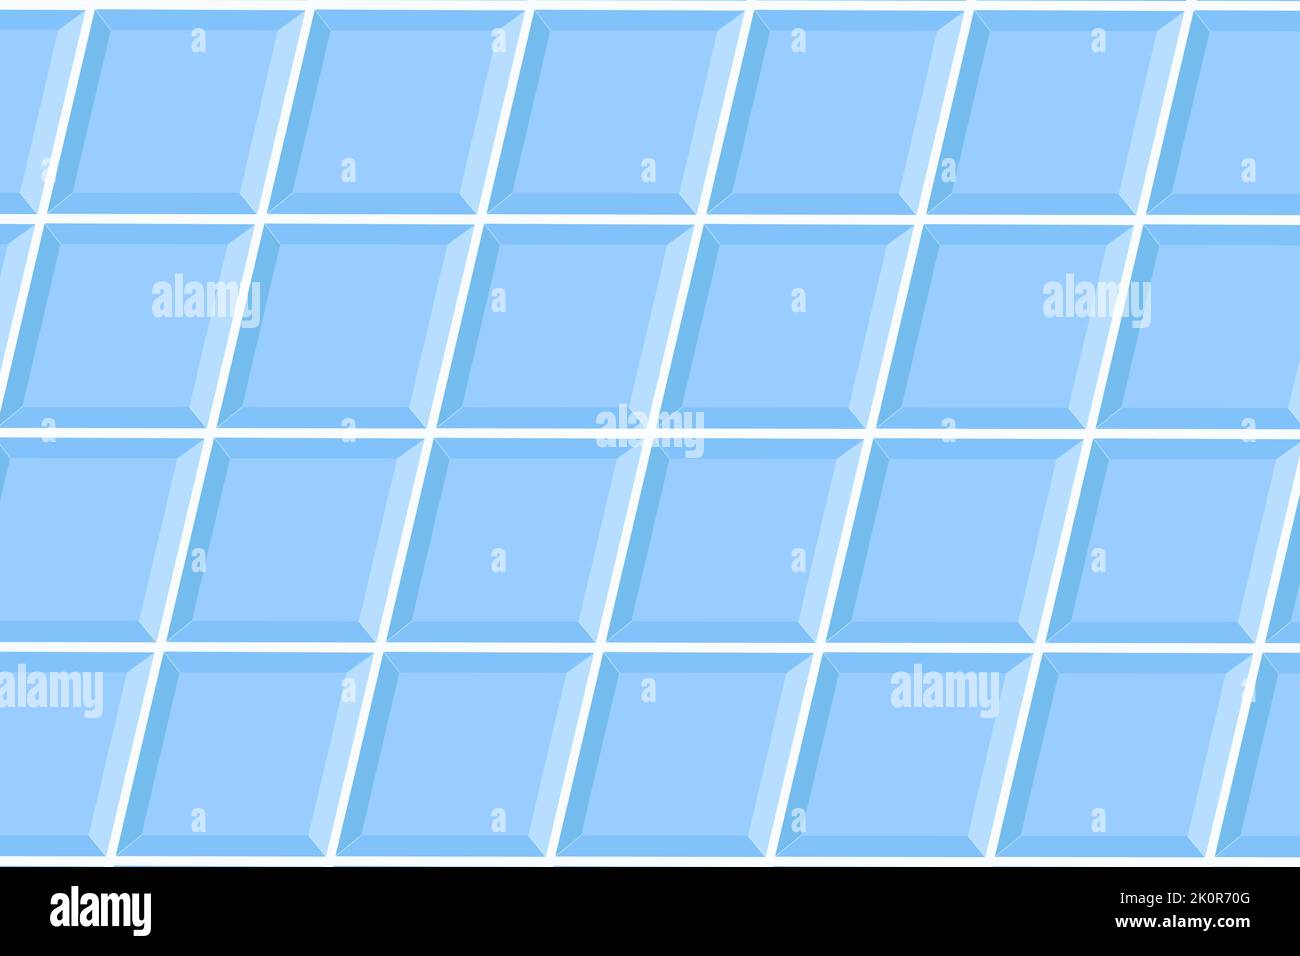 Blaue quadratische Kachel in diagonaler Anordnung. Keramische Wand- oder Bodenstruktur im Badezimmer oder auf der Toilette. Mosaikhintergrund innen oder außen. Innen- oder Außenflächen mit nahtlosem Muster. Stock Vektor